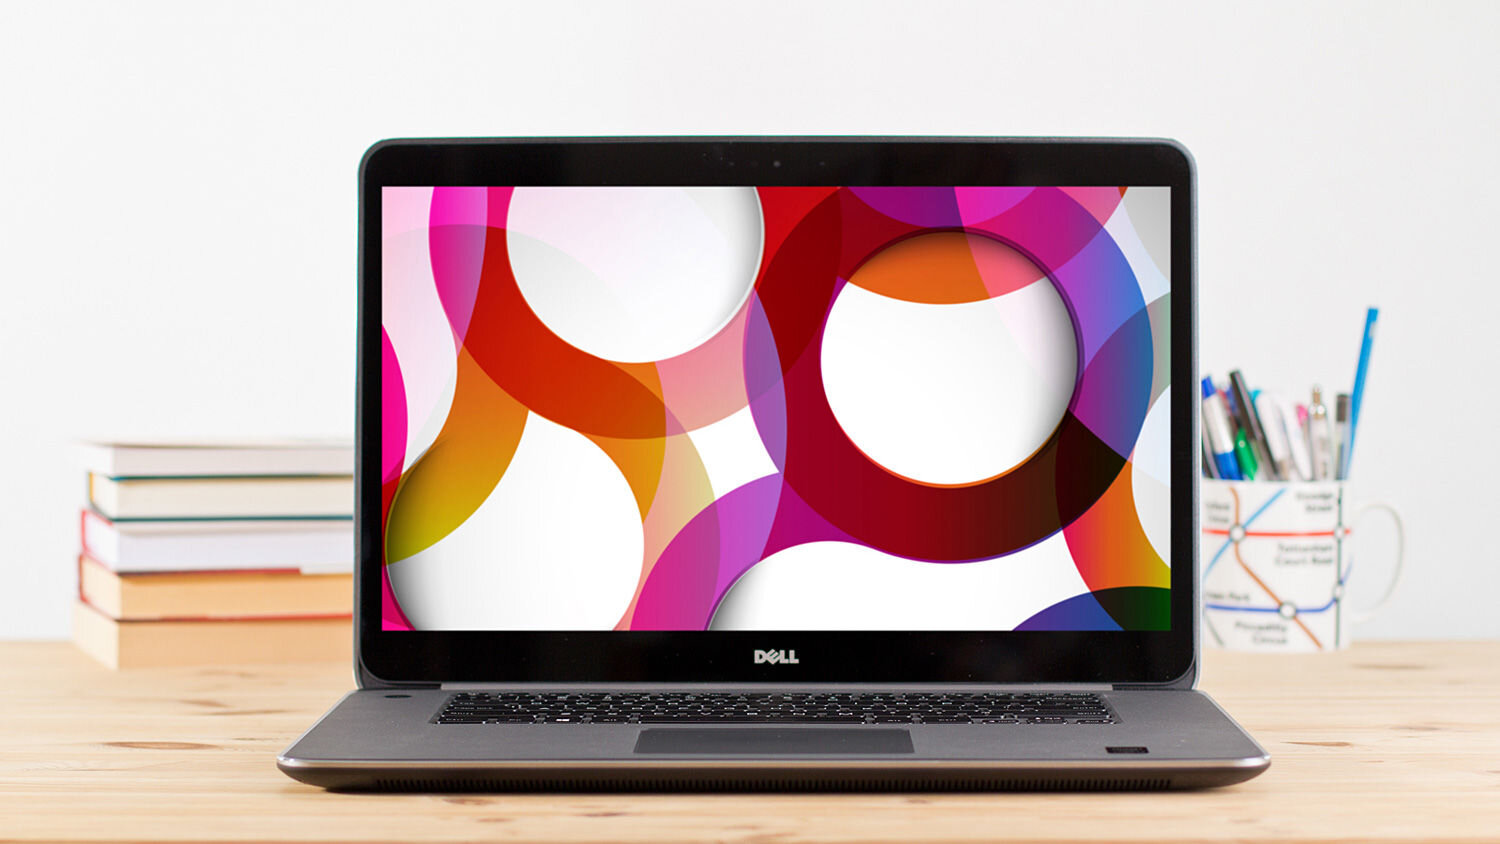 Màn hình của Laptop Dell được các chuyên gia đánh giá cao